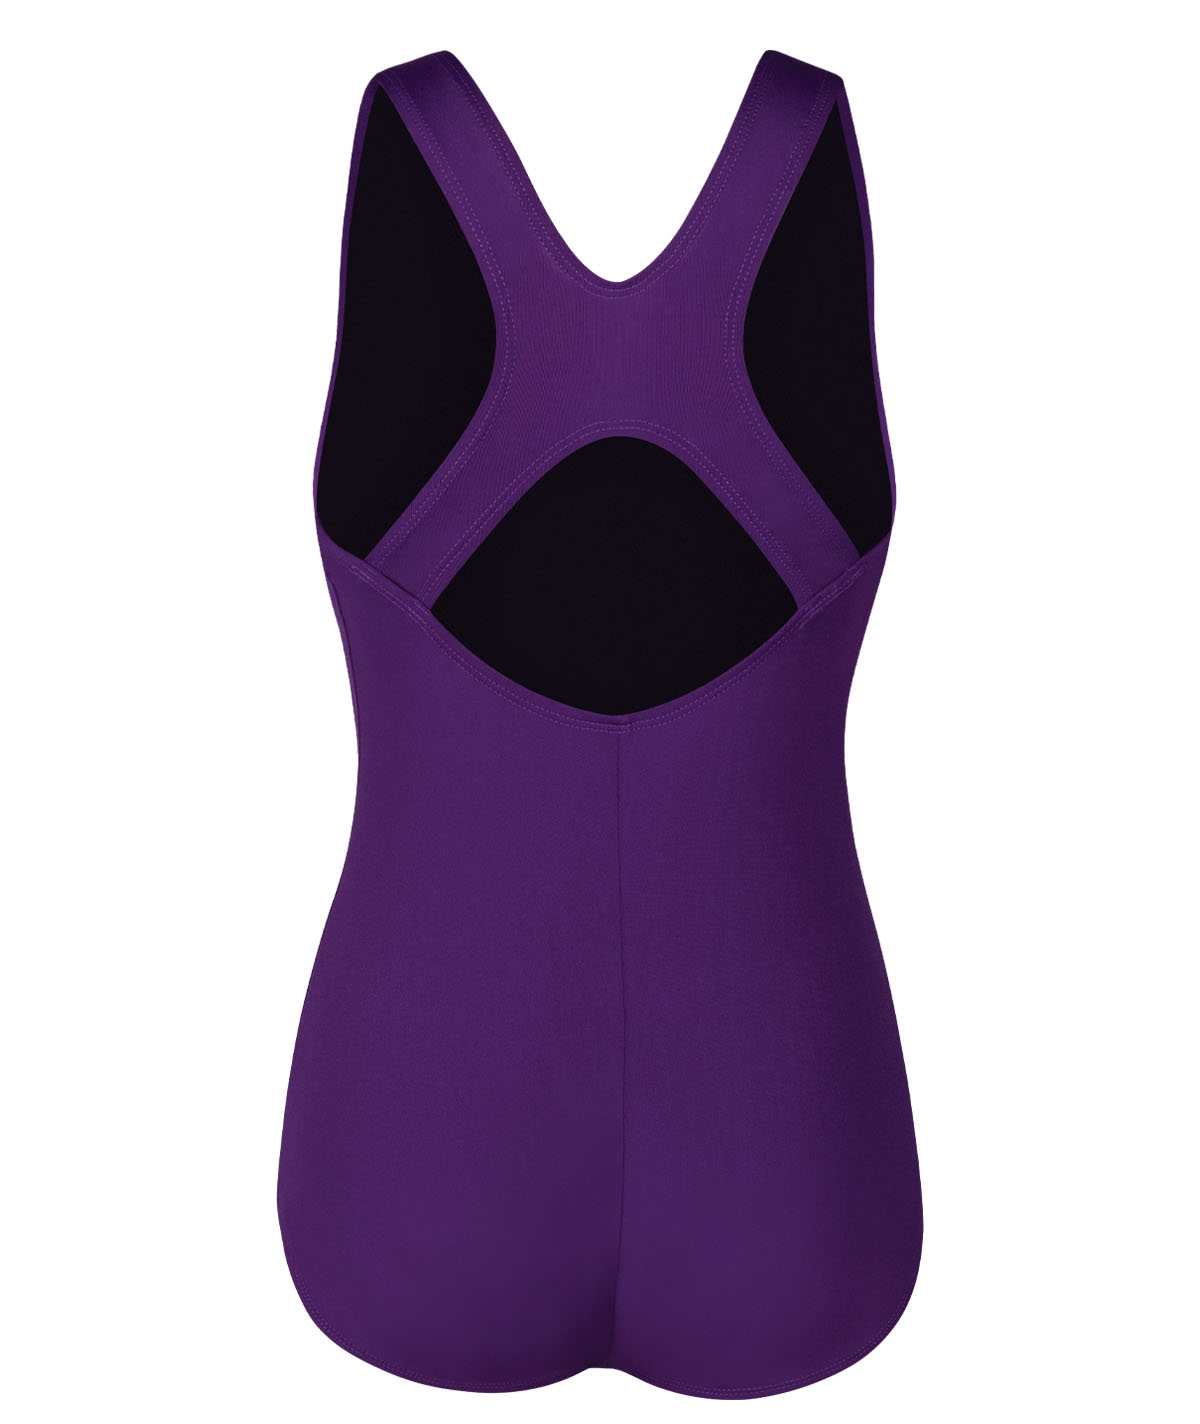 Women's Aquashape Conservative Lap Suit 1-Piece Swimsuit